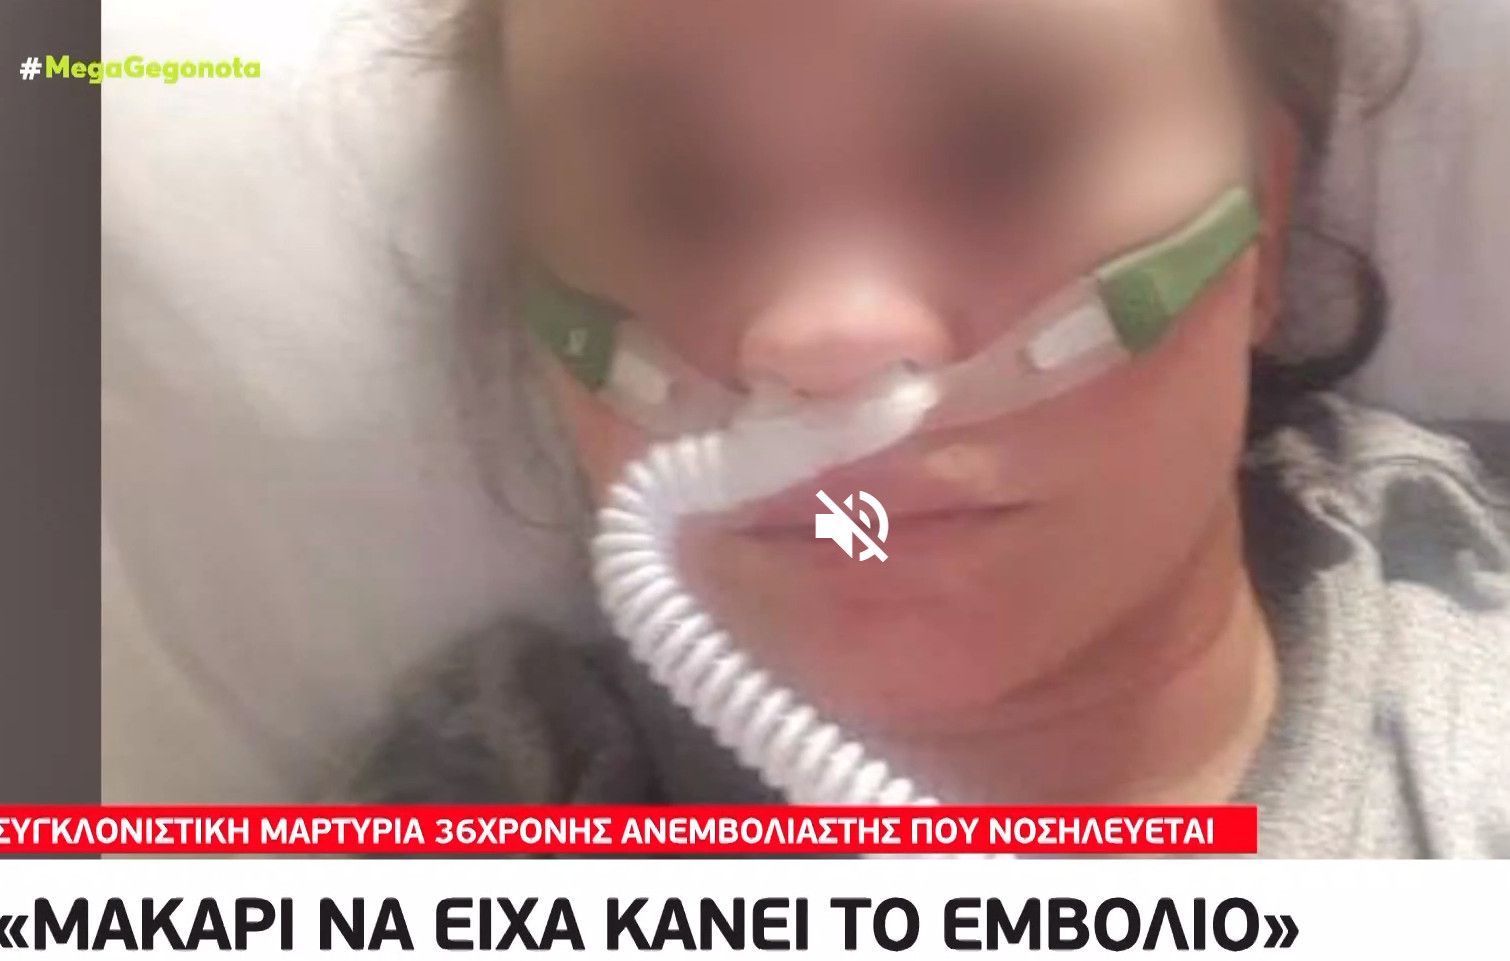 Κοροναϊός - 36χρονη ανεμβολίαστη που νοσηλεύεται εύχεται να είχε κάνει το εμβόλιο